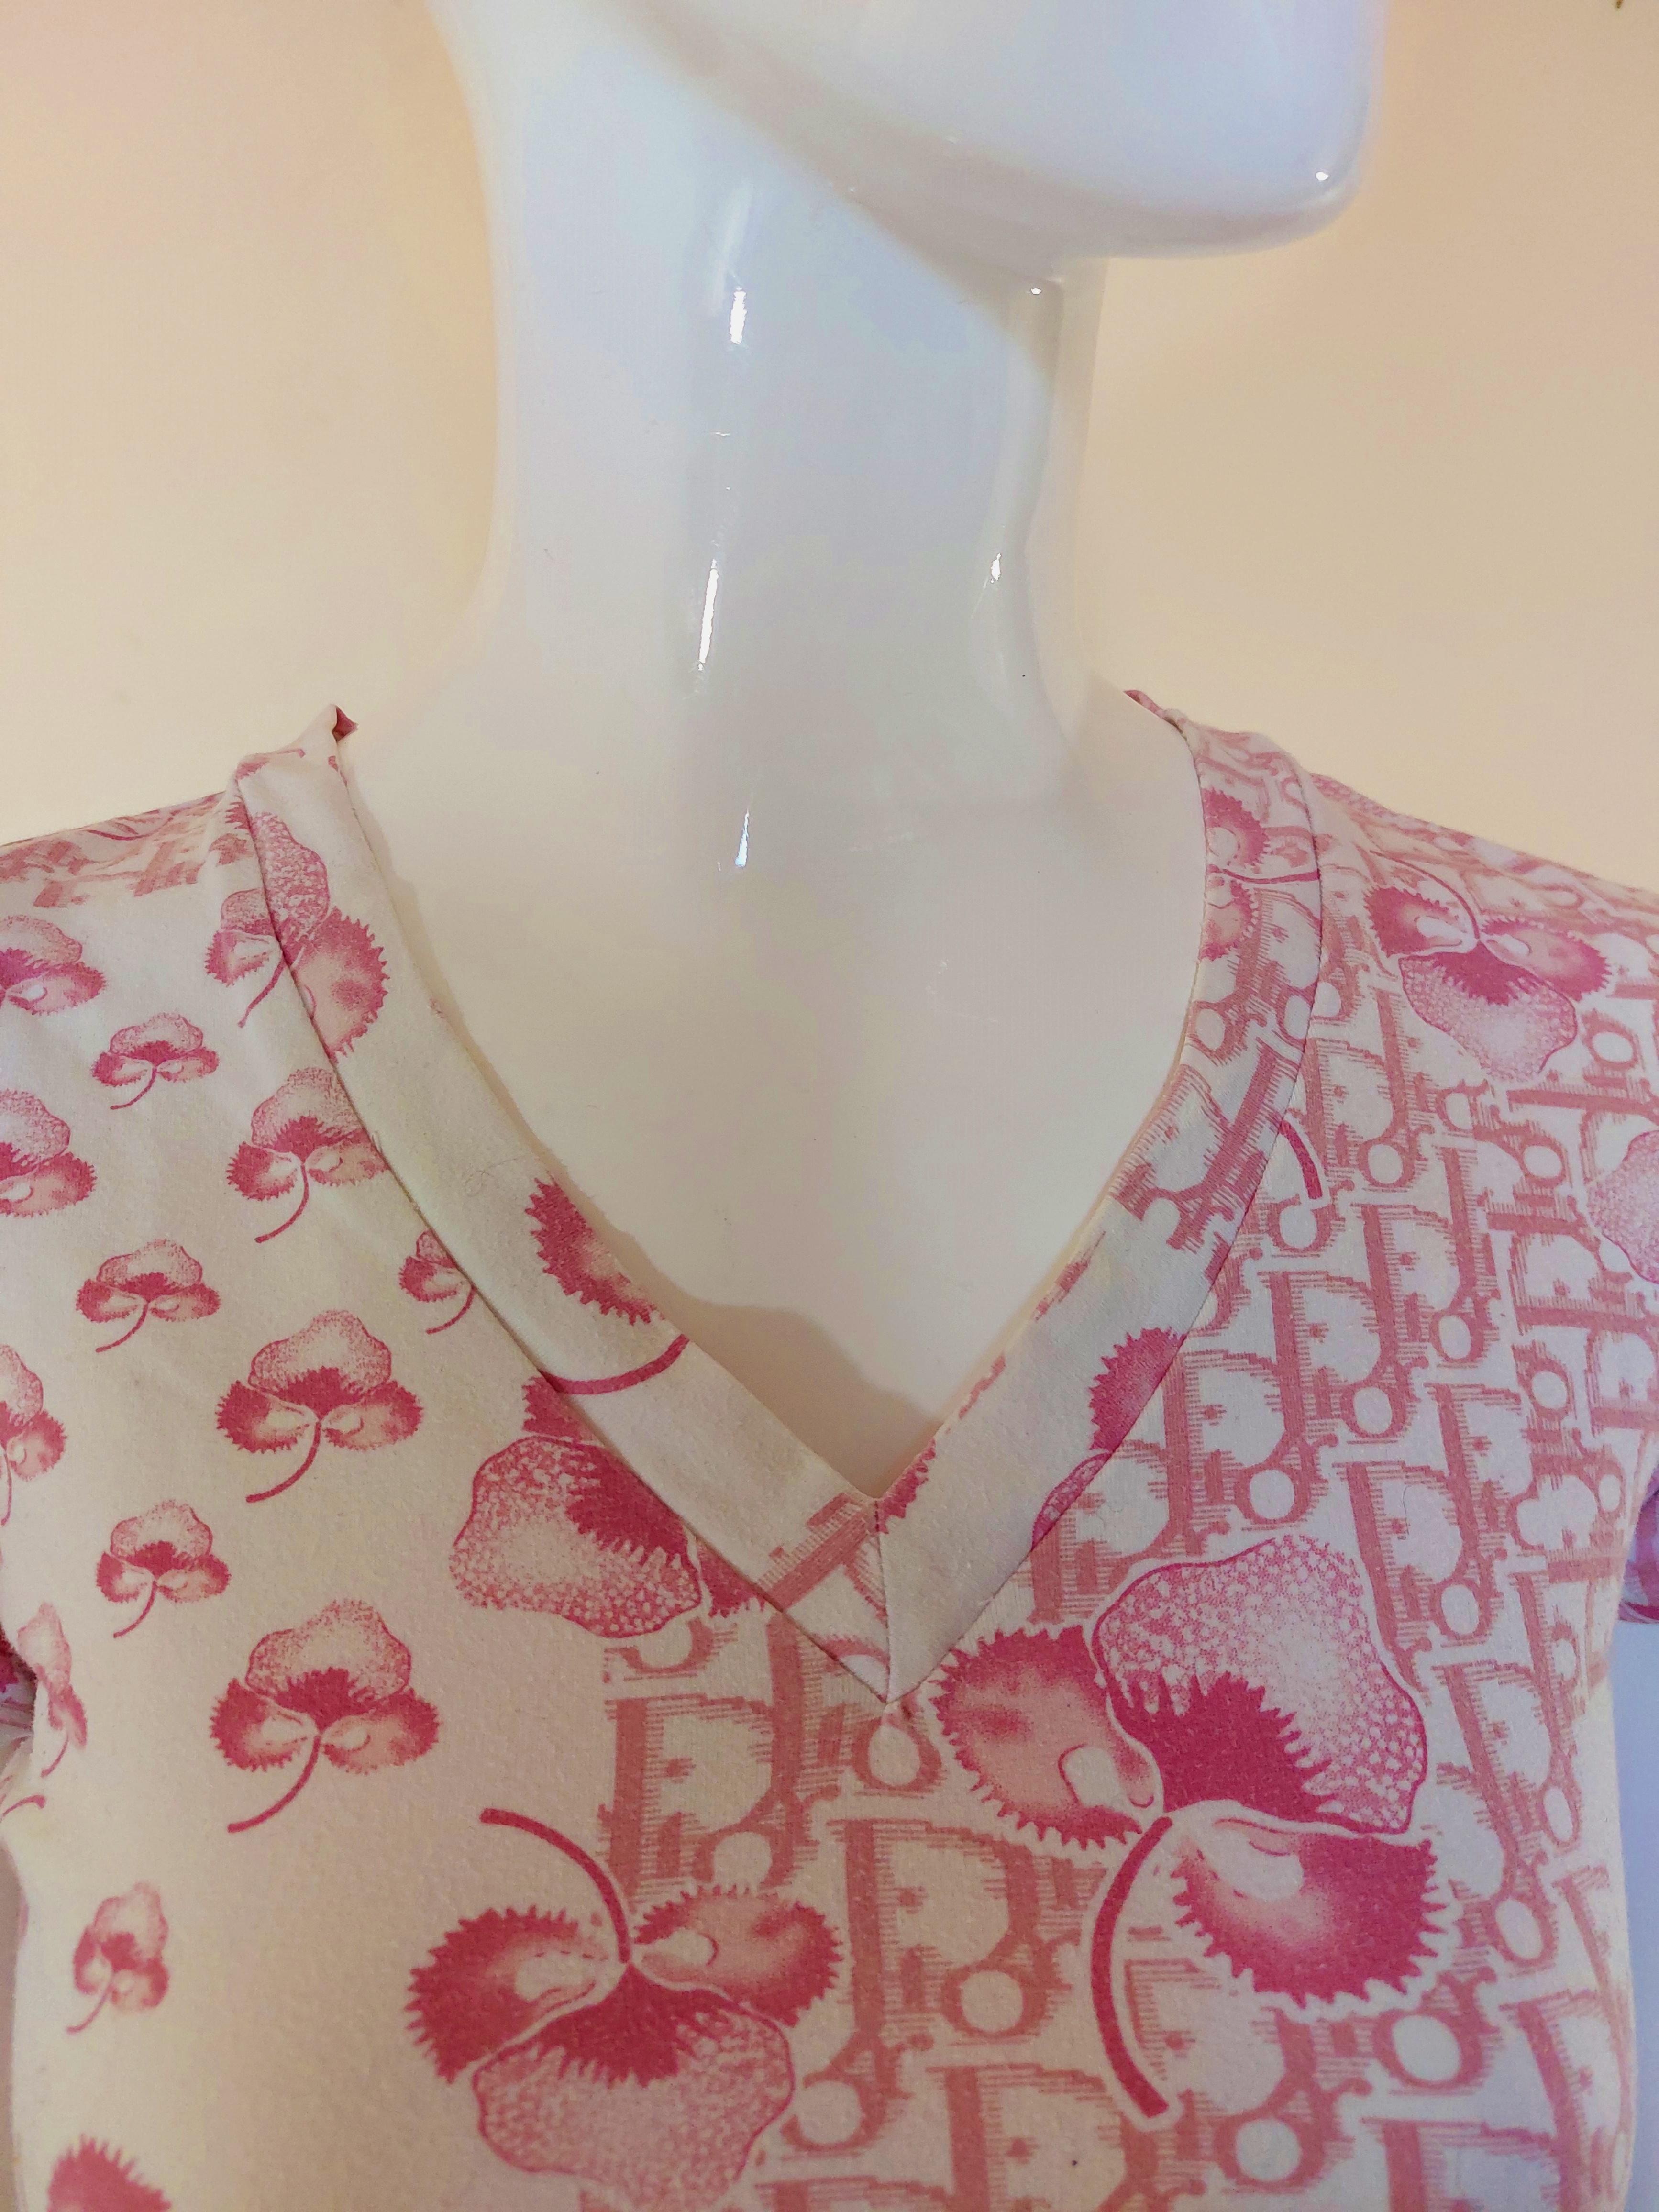 Christian Dior J’adore Cherry Blossom Monogram Floral Logo Pink Top Shirt 4